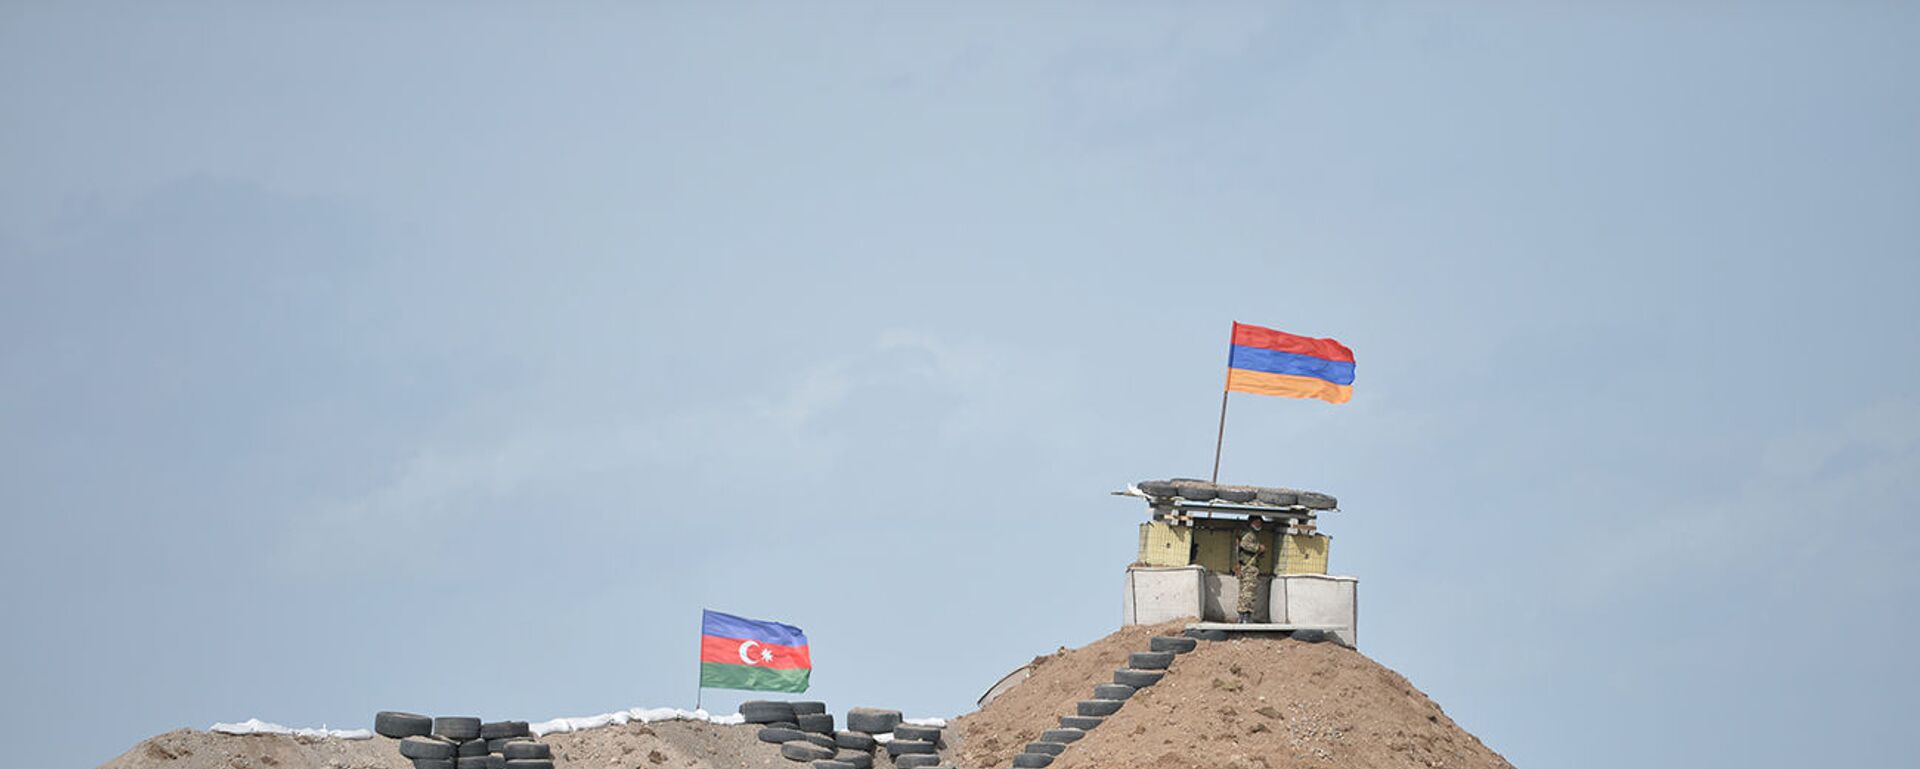 Военные посты на армянсо-азербайджанской границе - Sputnik Արմենիա, 1920, 29.04.2021